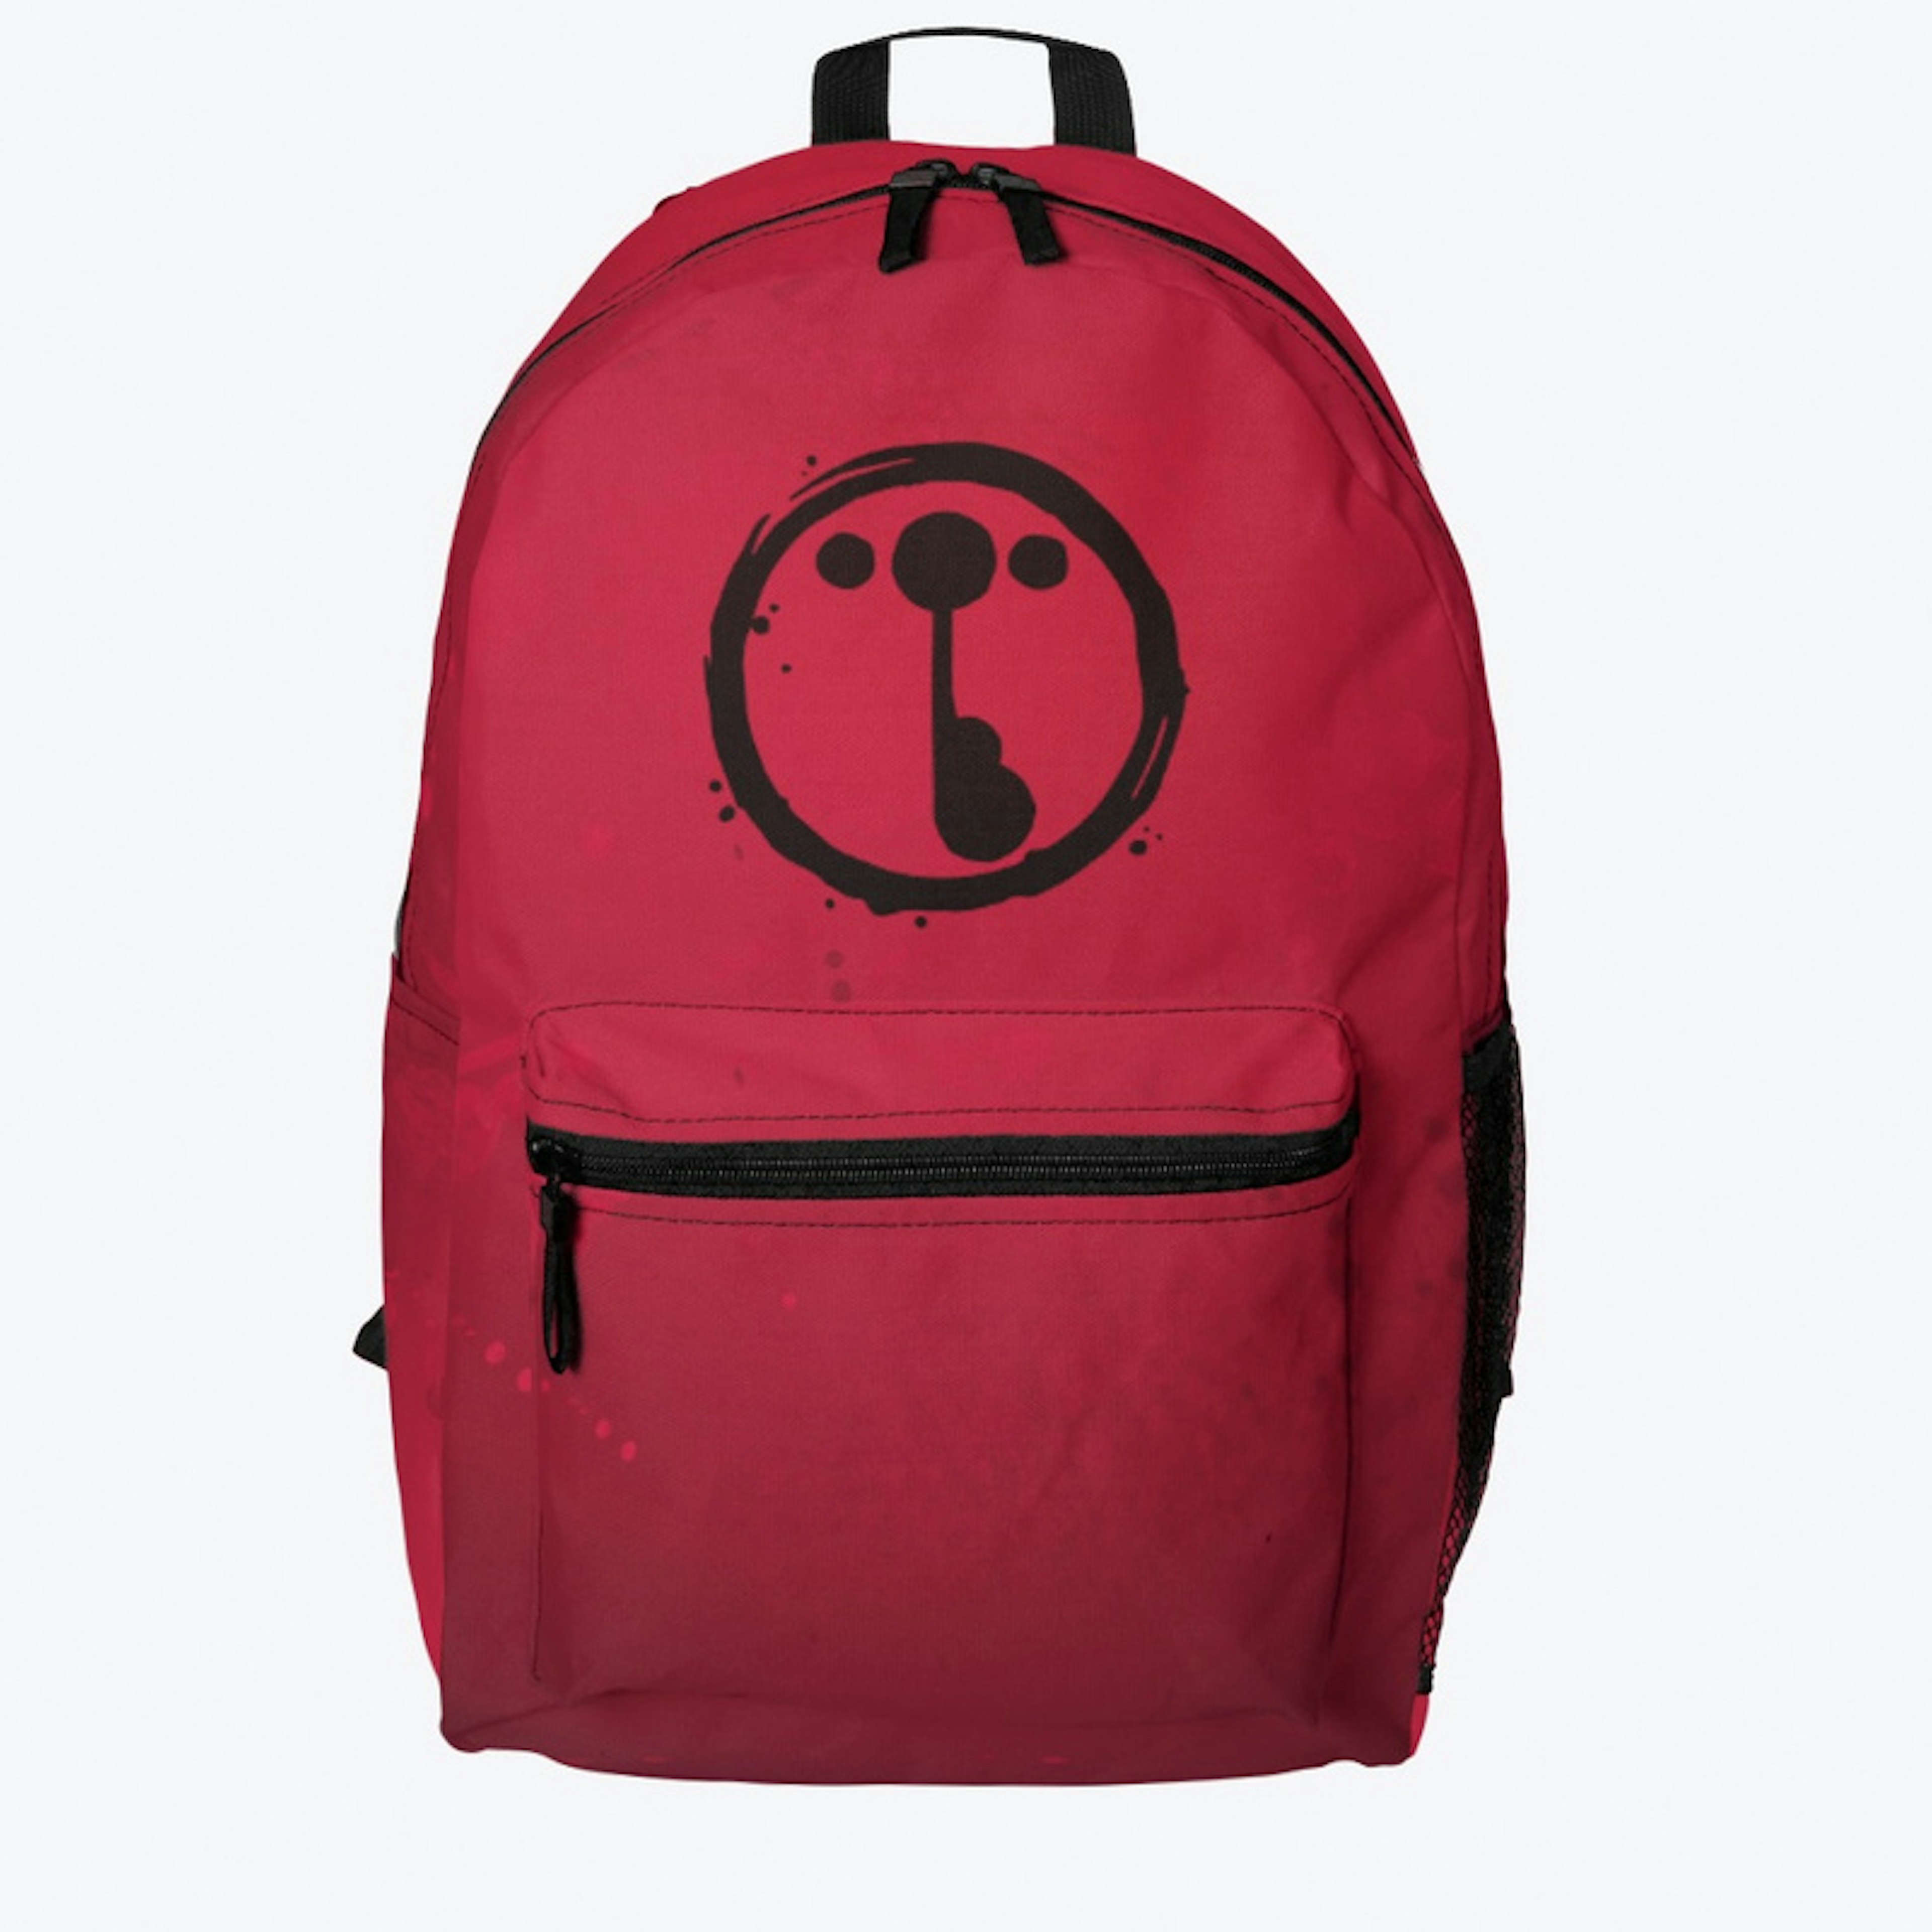 Toribash Backpack